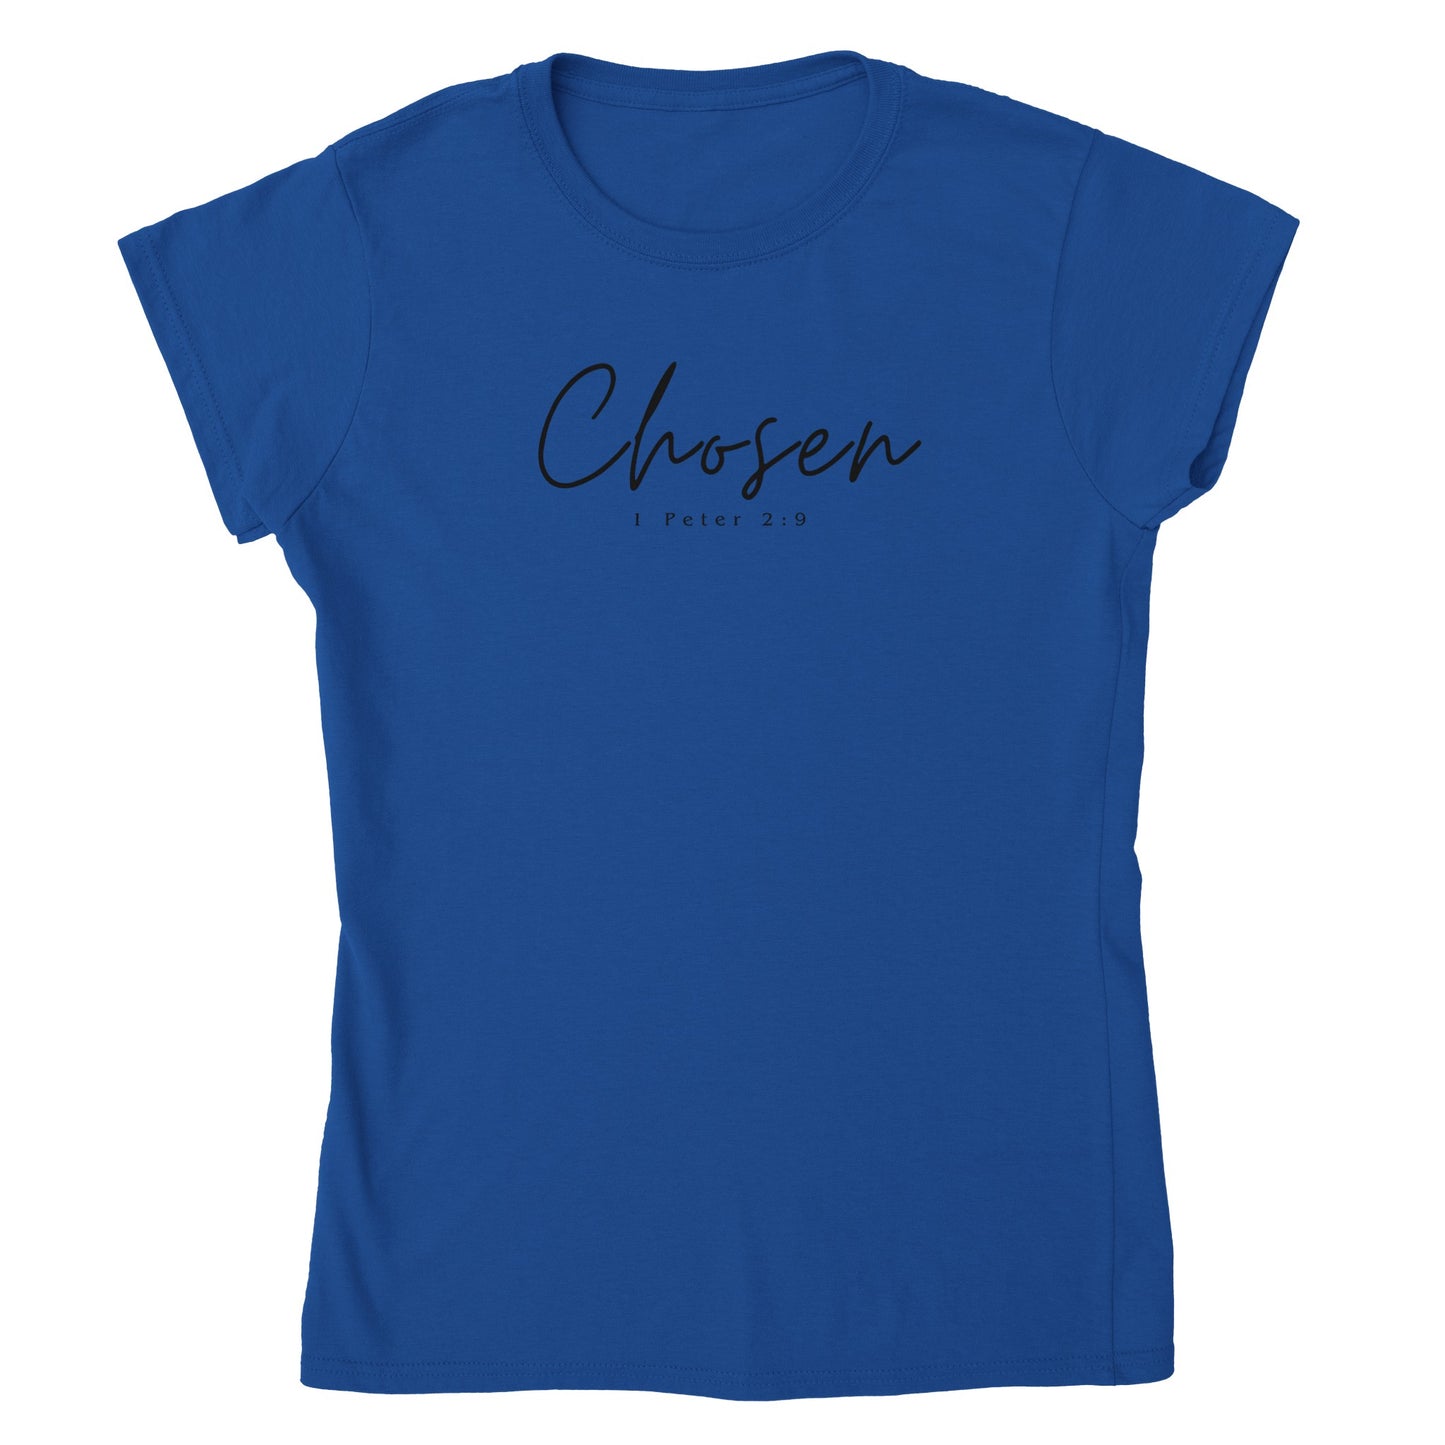 Chosen Women’s T-Shirt